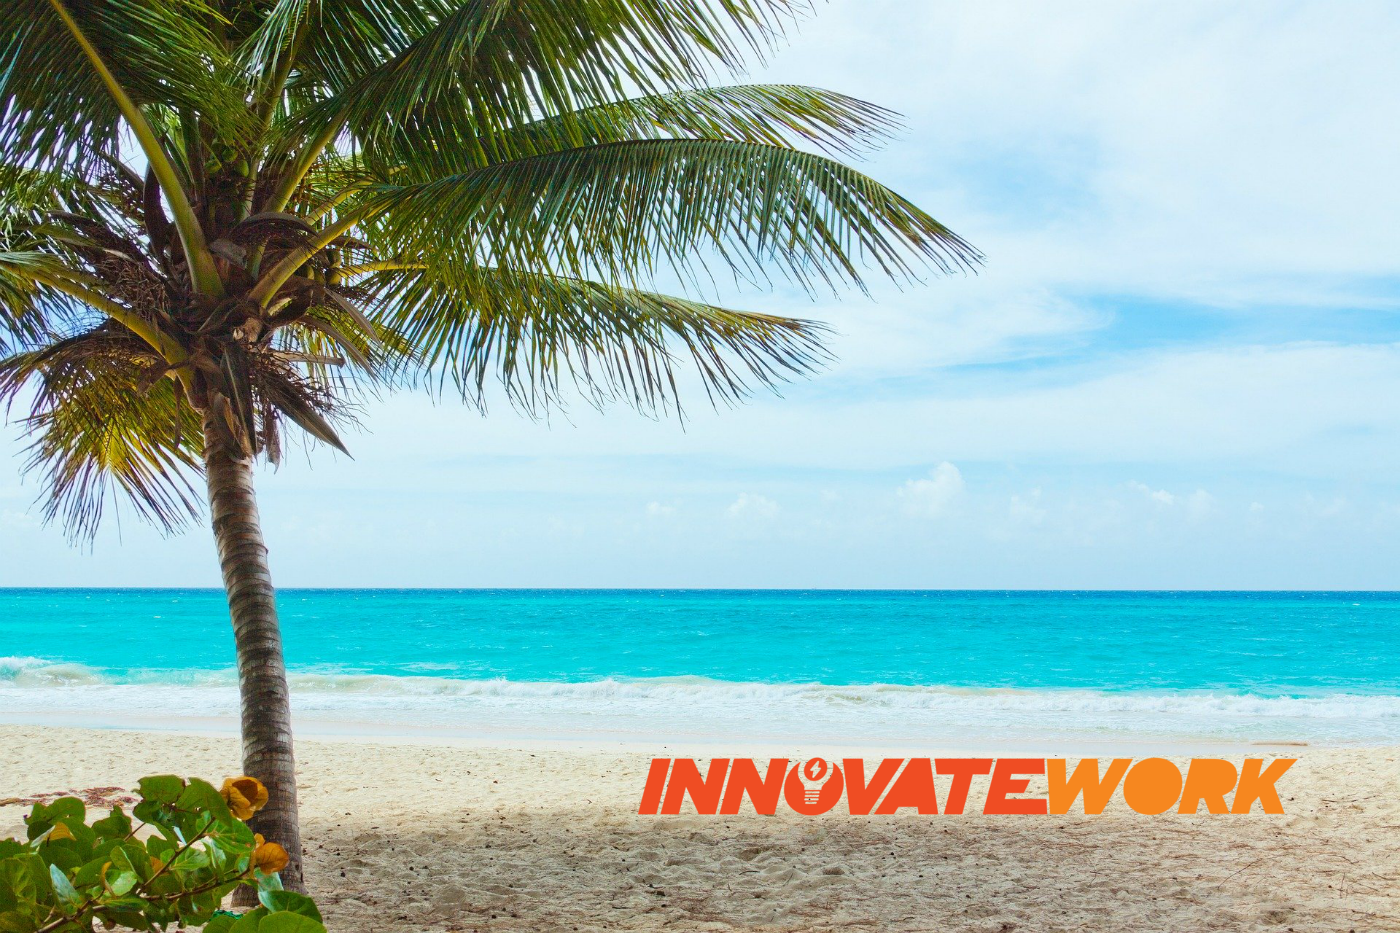 InnovateWork Caribbean